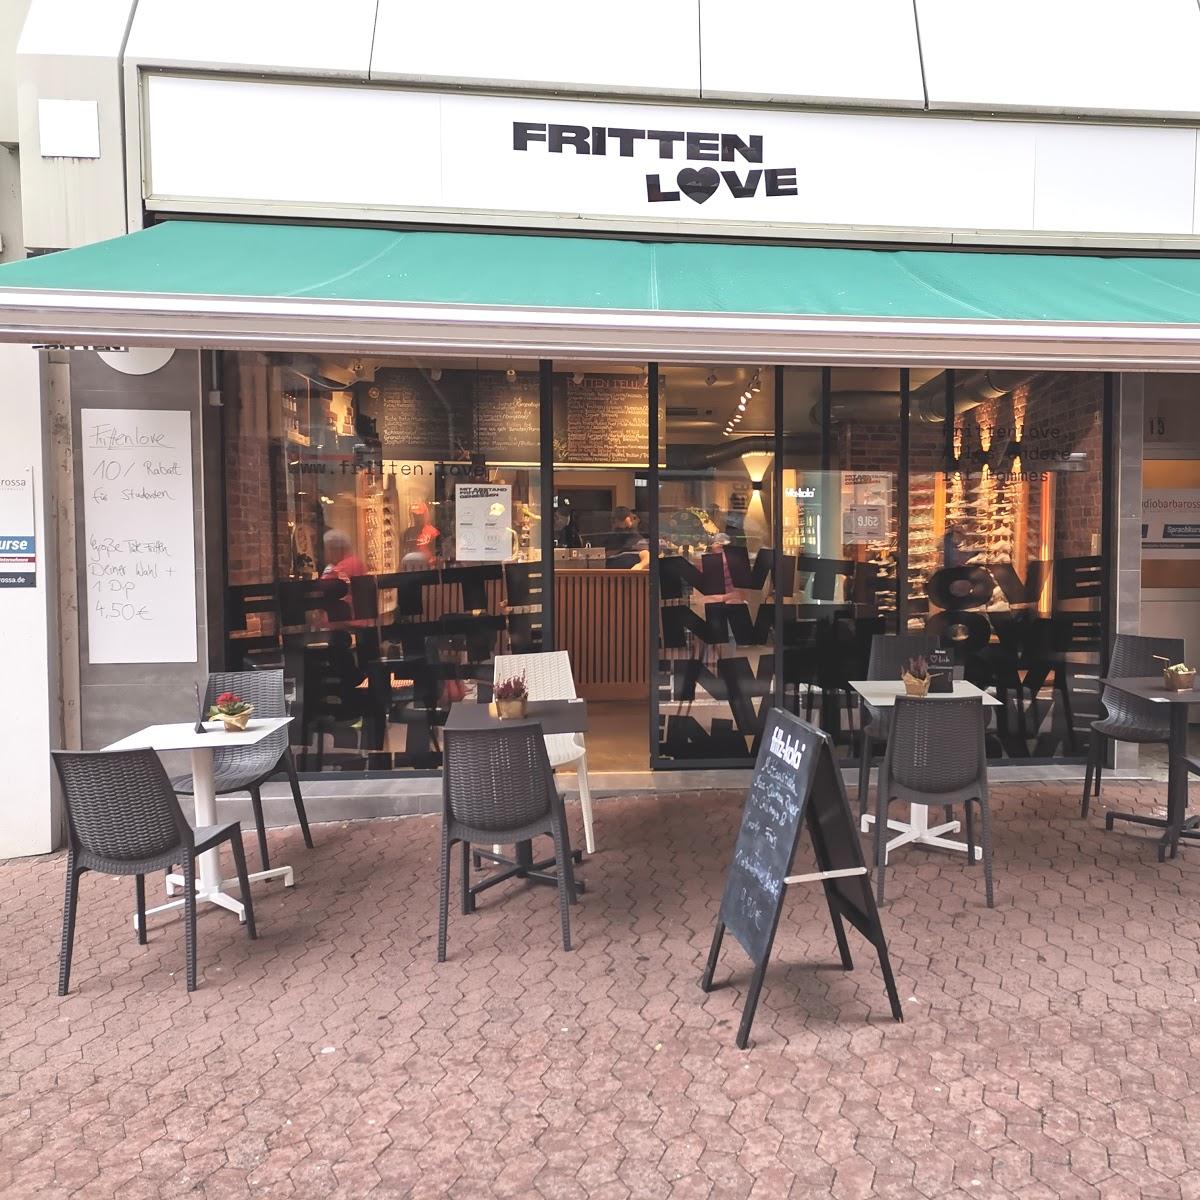 Restaurant "Frittenlove" in Mainz